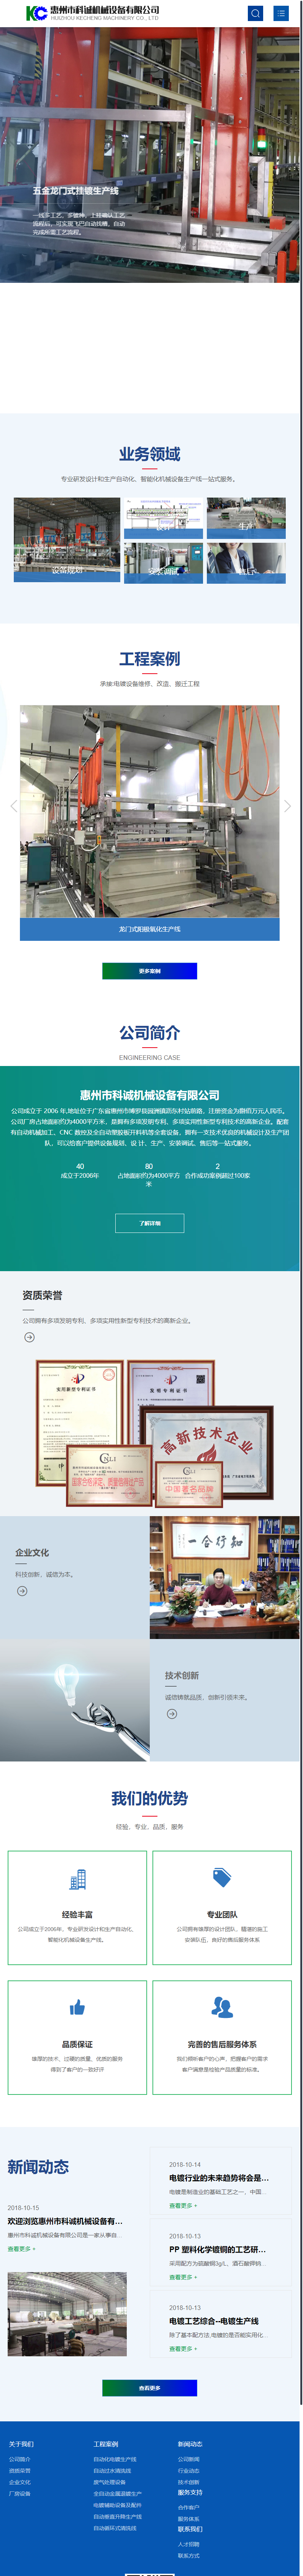 惠州市科诚机械设备有限公司网站案例